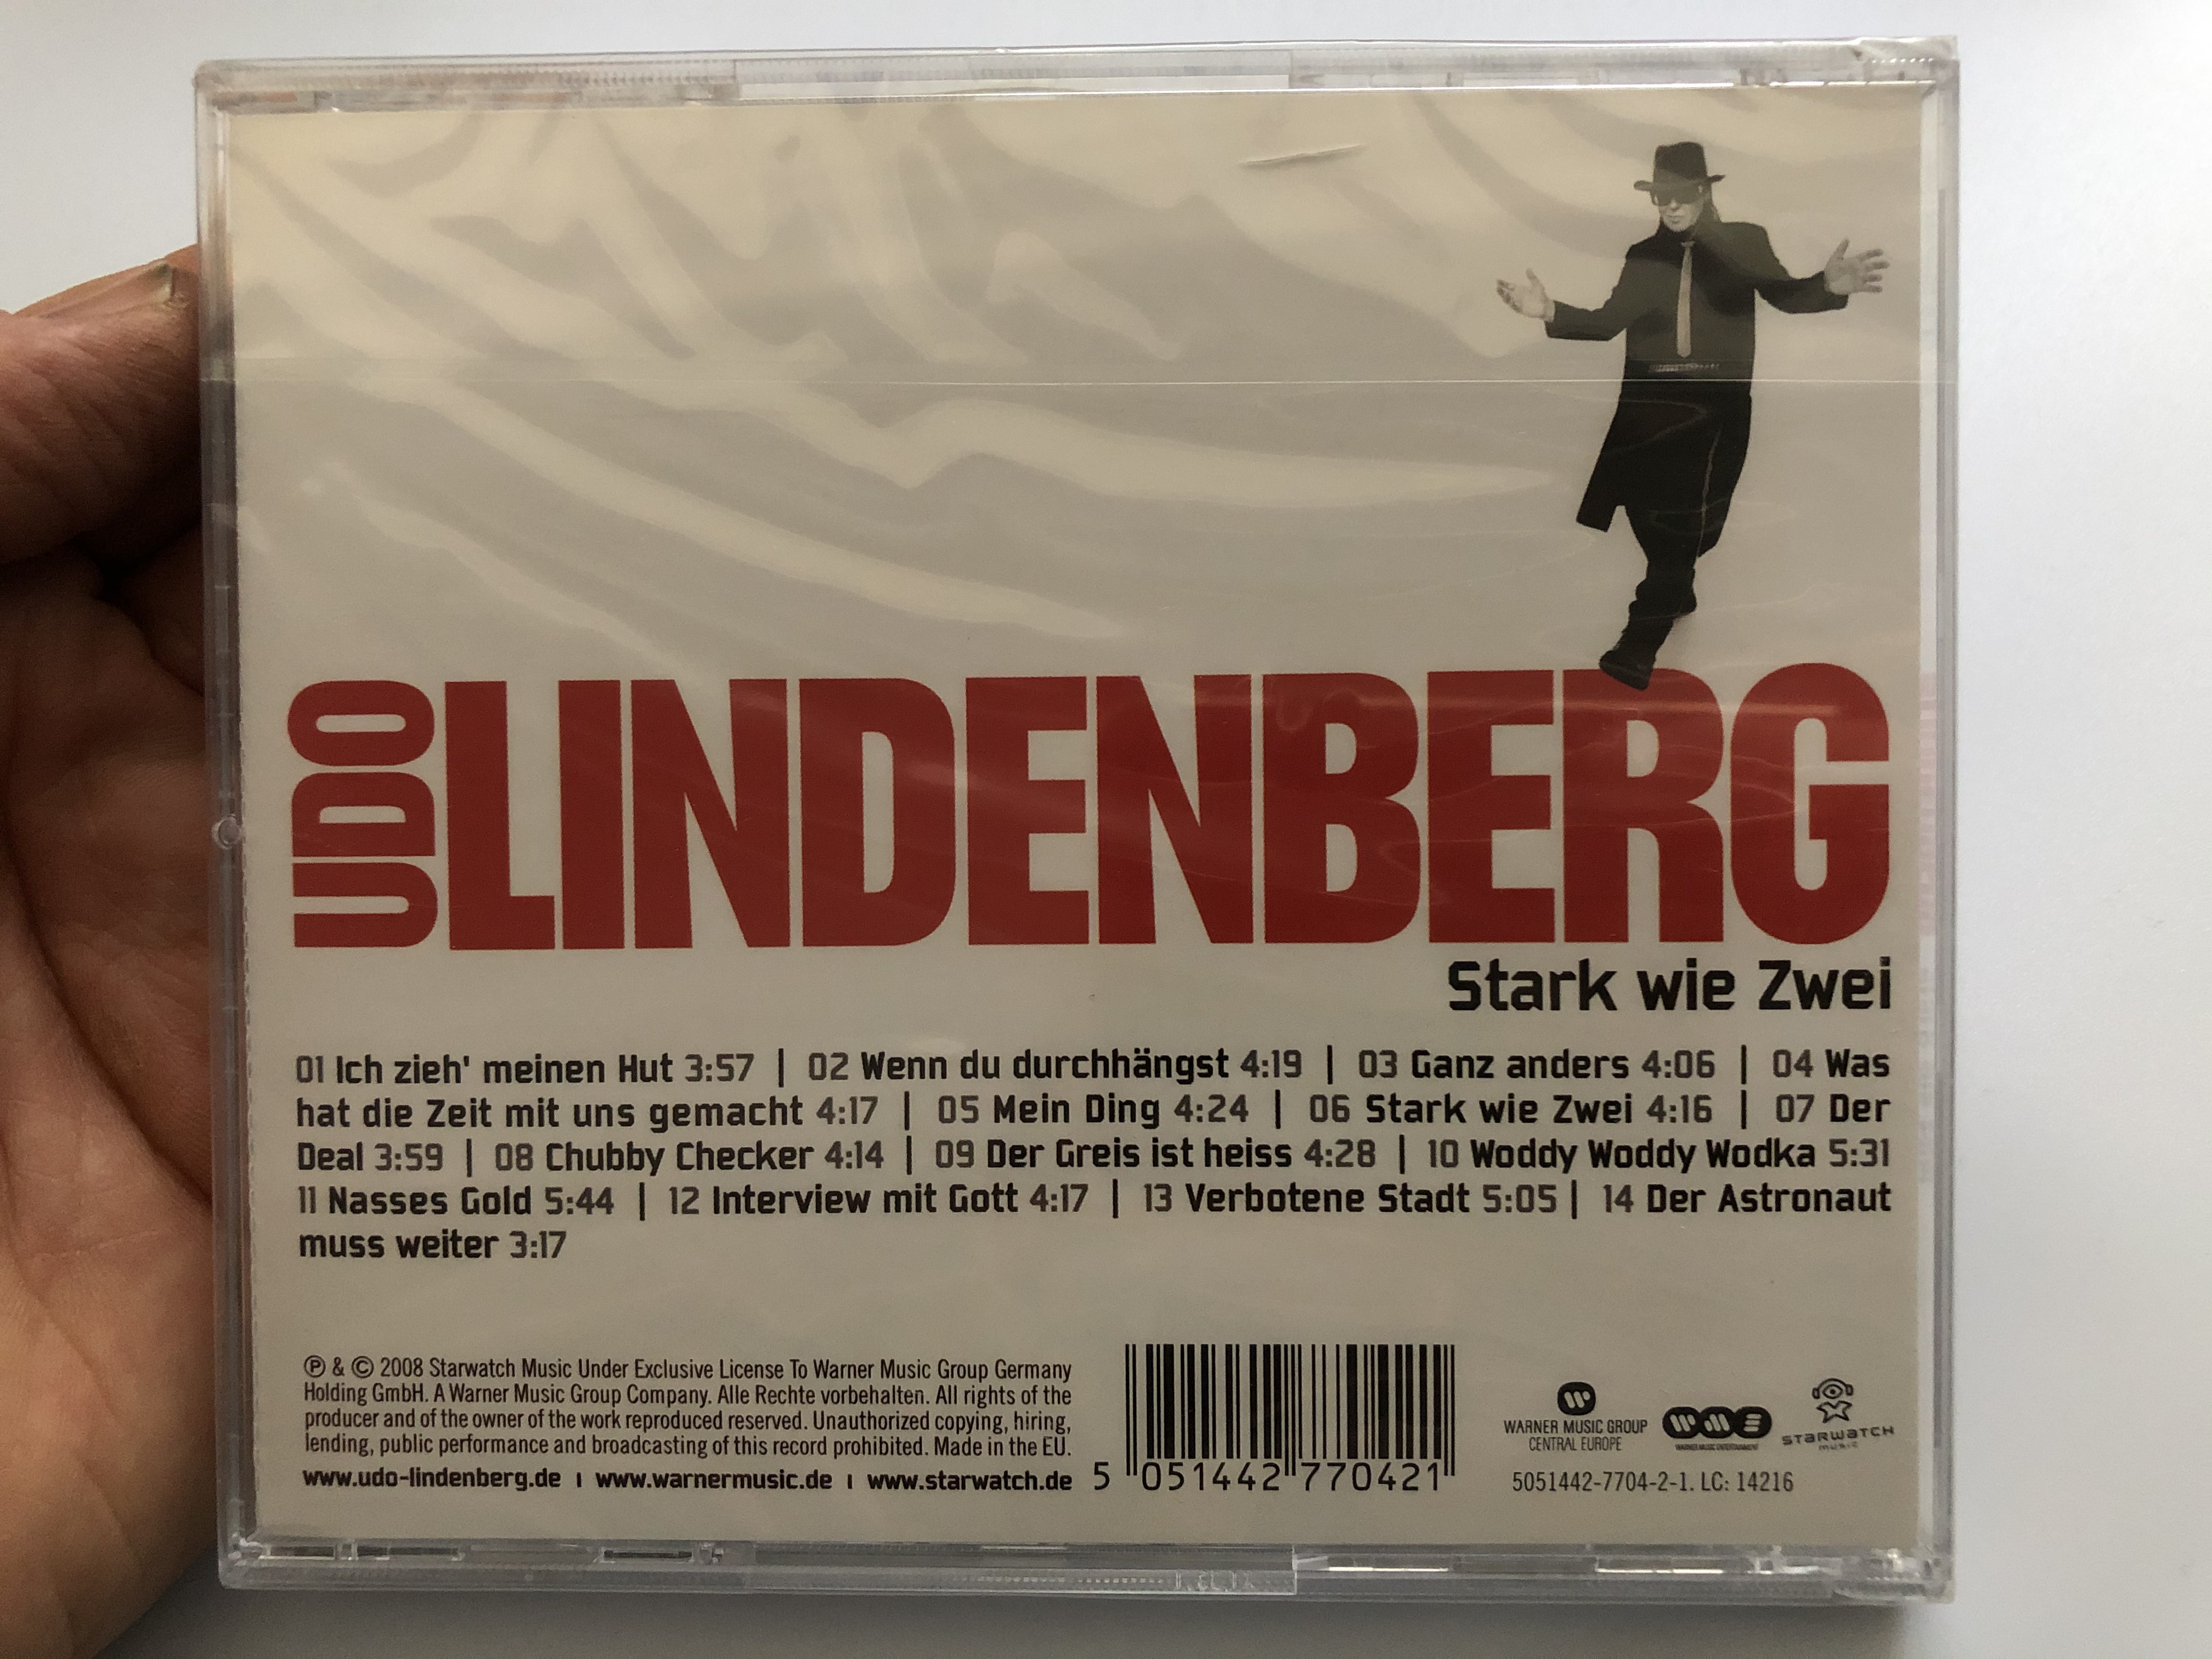 udo-lindenberg-stark-wie-zwei-starwatch-music-audio-cd-2008-5051442-7704-2-1-2-.jpg